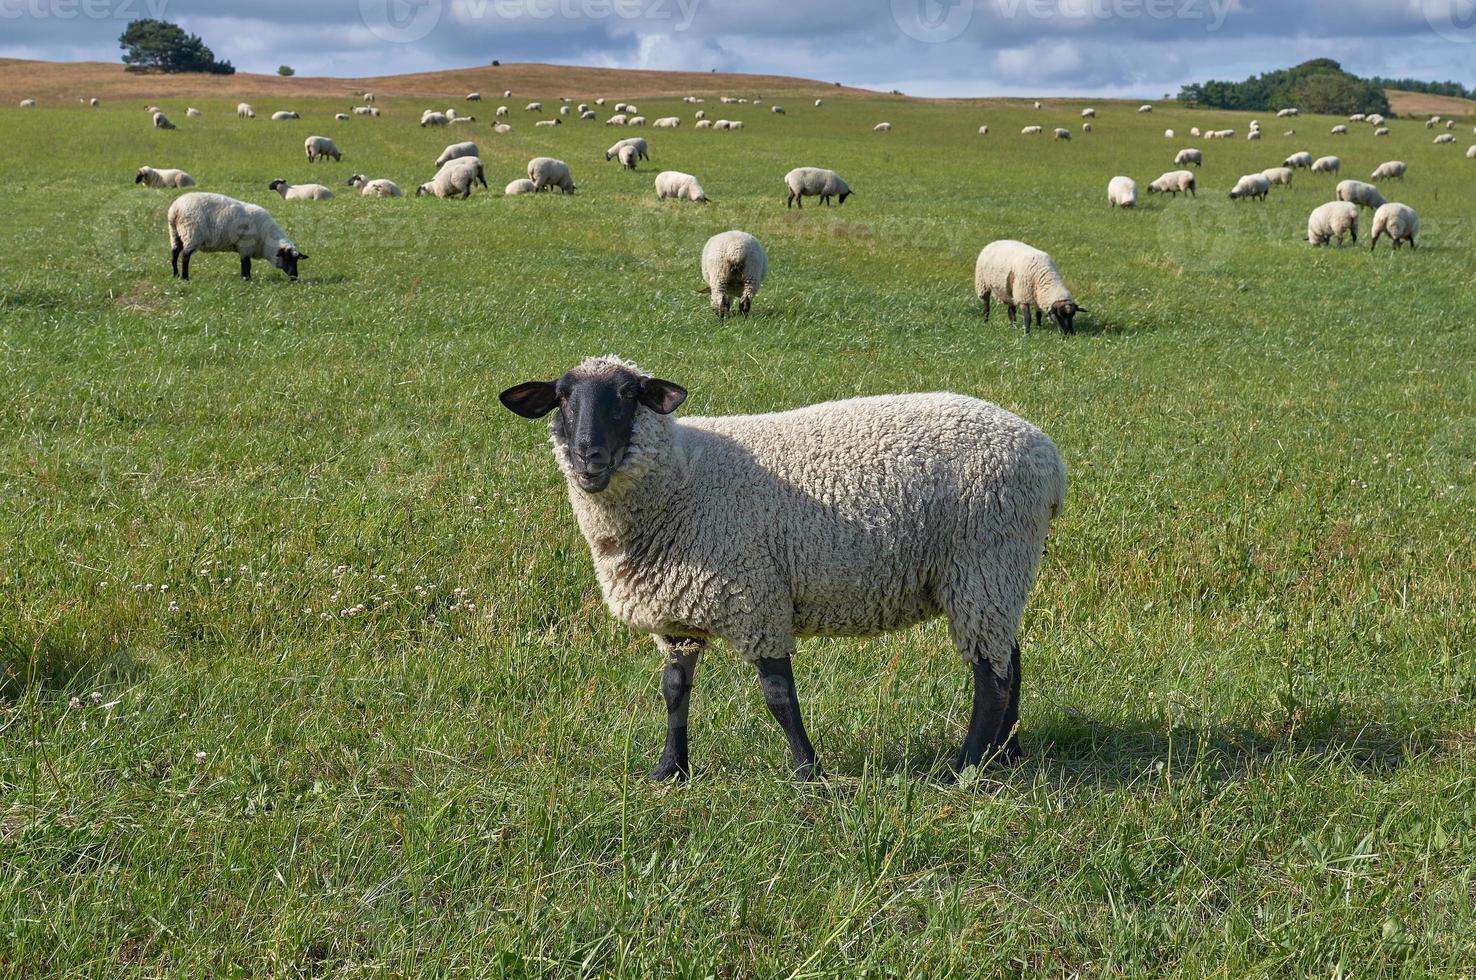 alemão de cabeça preta Carneiro ovelha em Prado, Alemanha foto